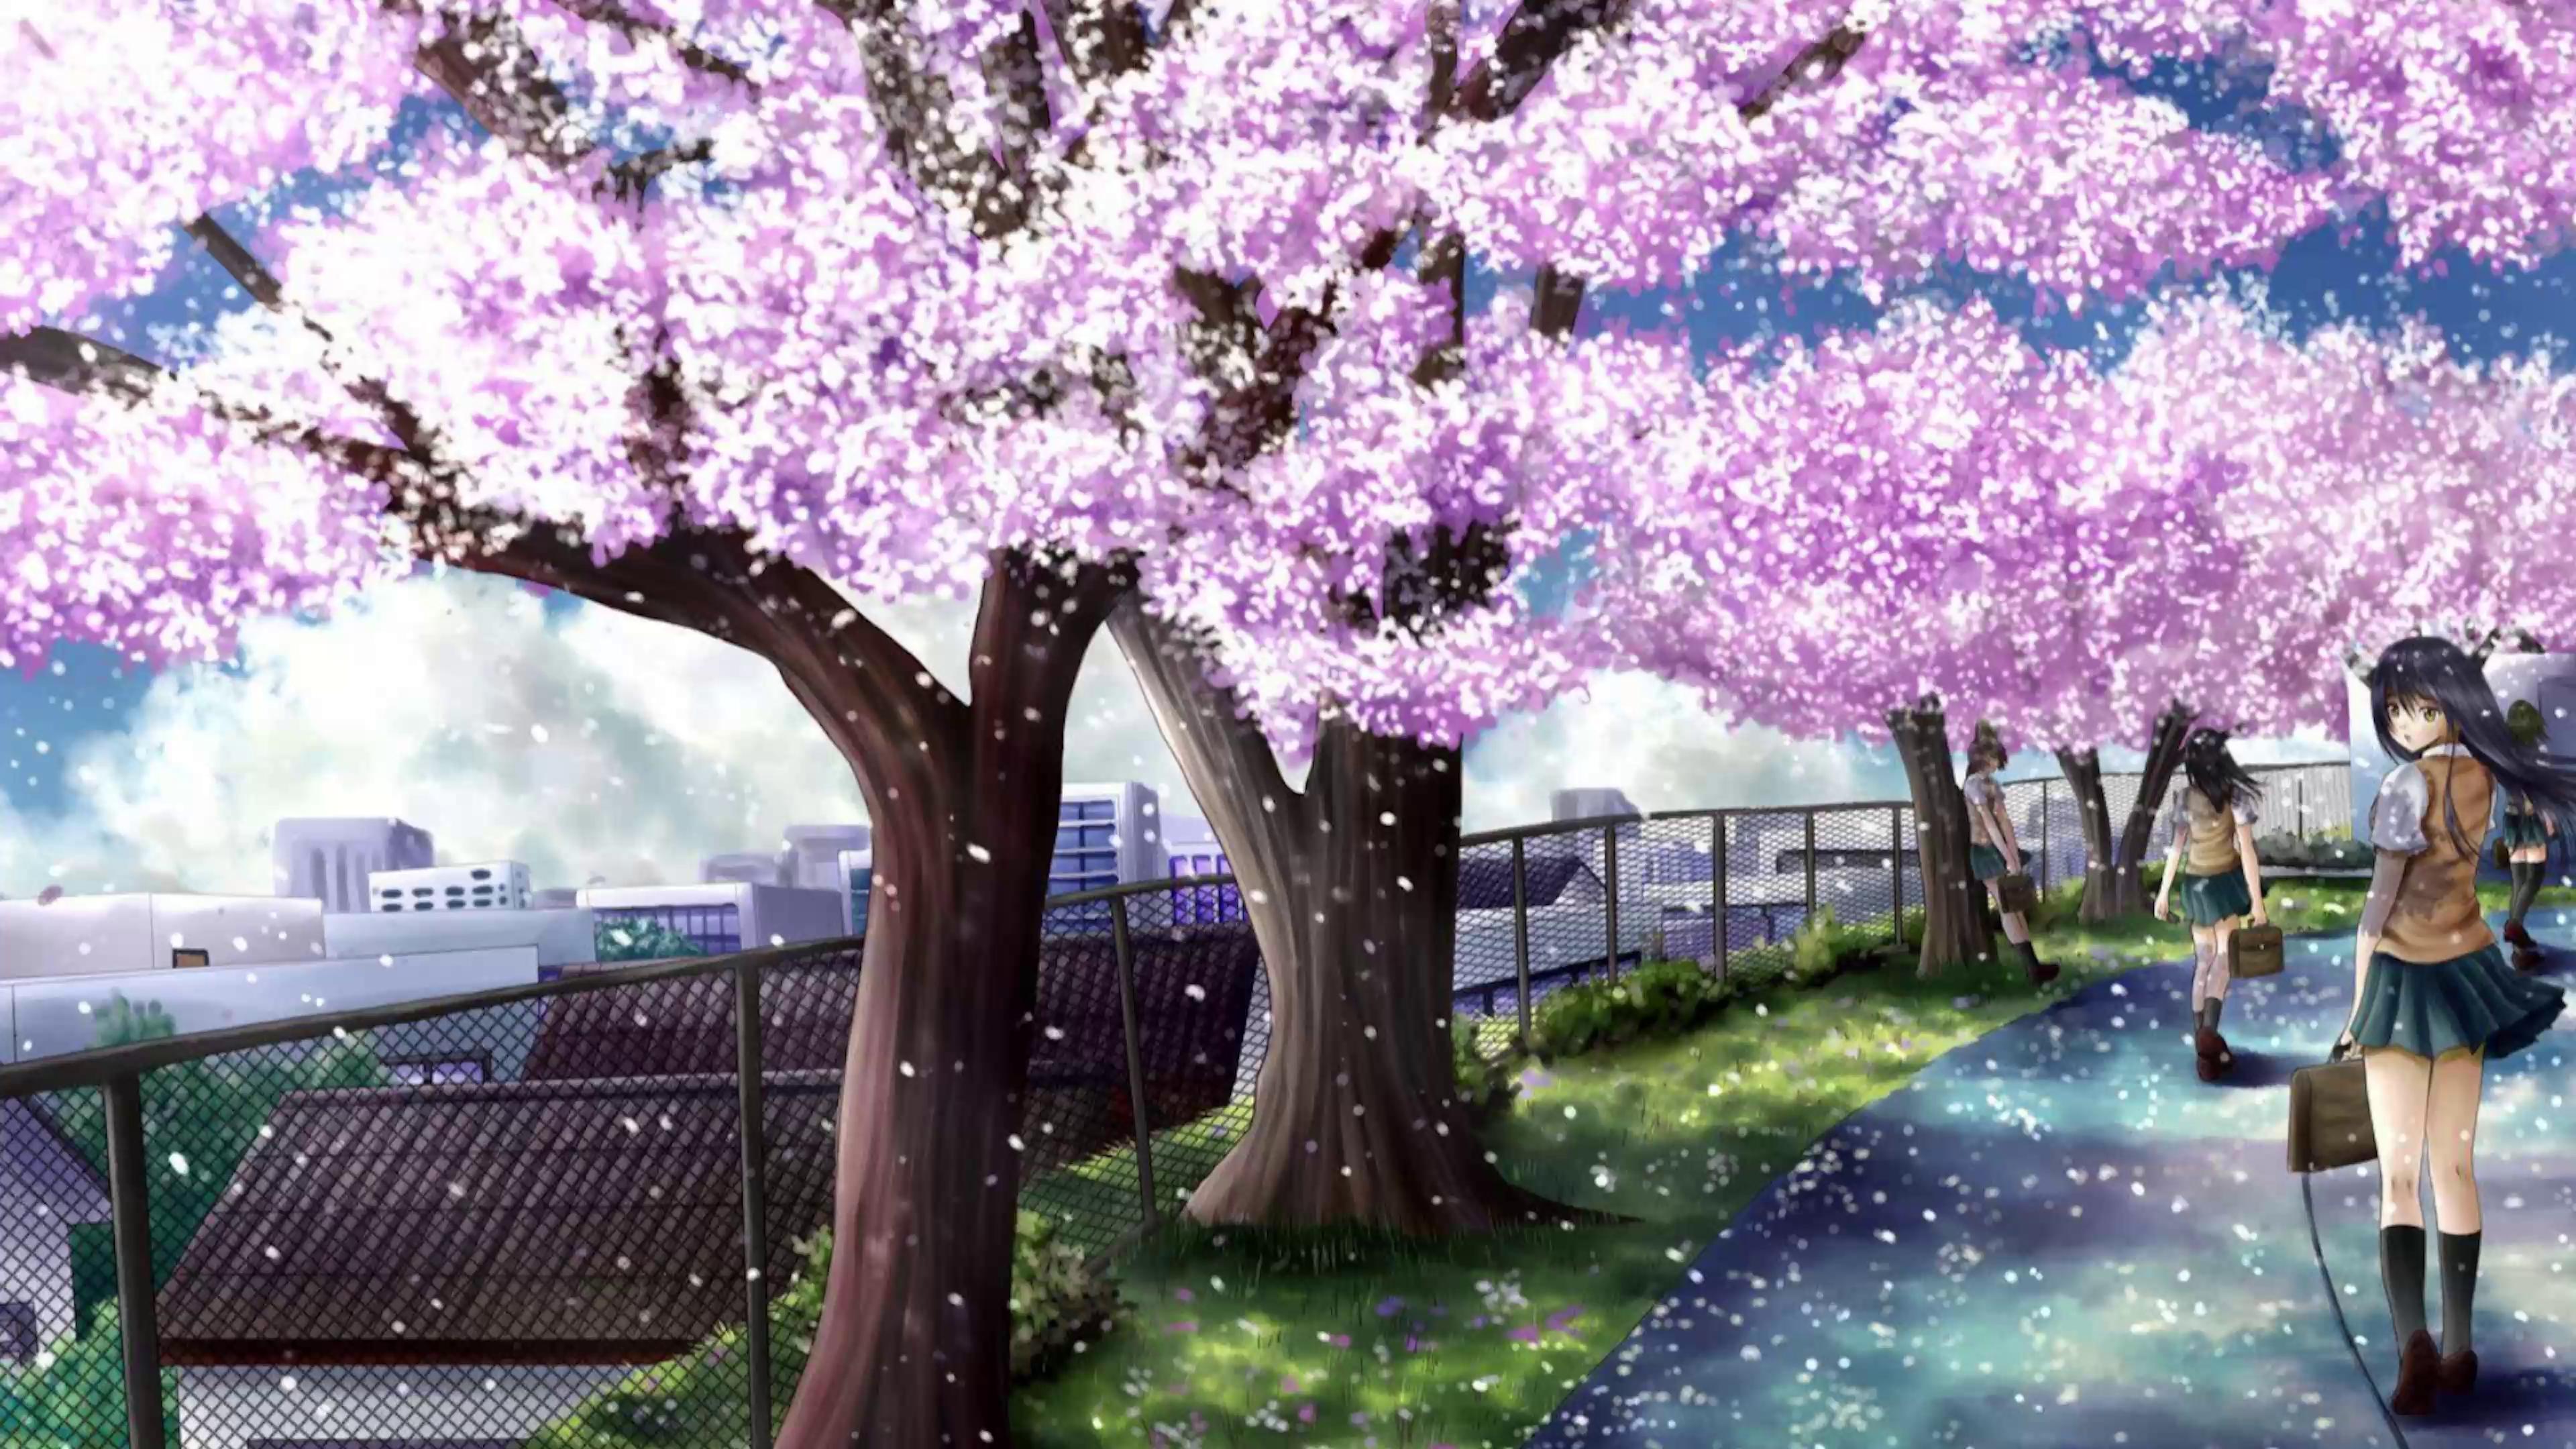 Anime Cherry Blossom Full HD Wallpaper. | Anime cherry blossom, Cherry  blossom wallpaper, Cherry blossom background